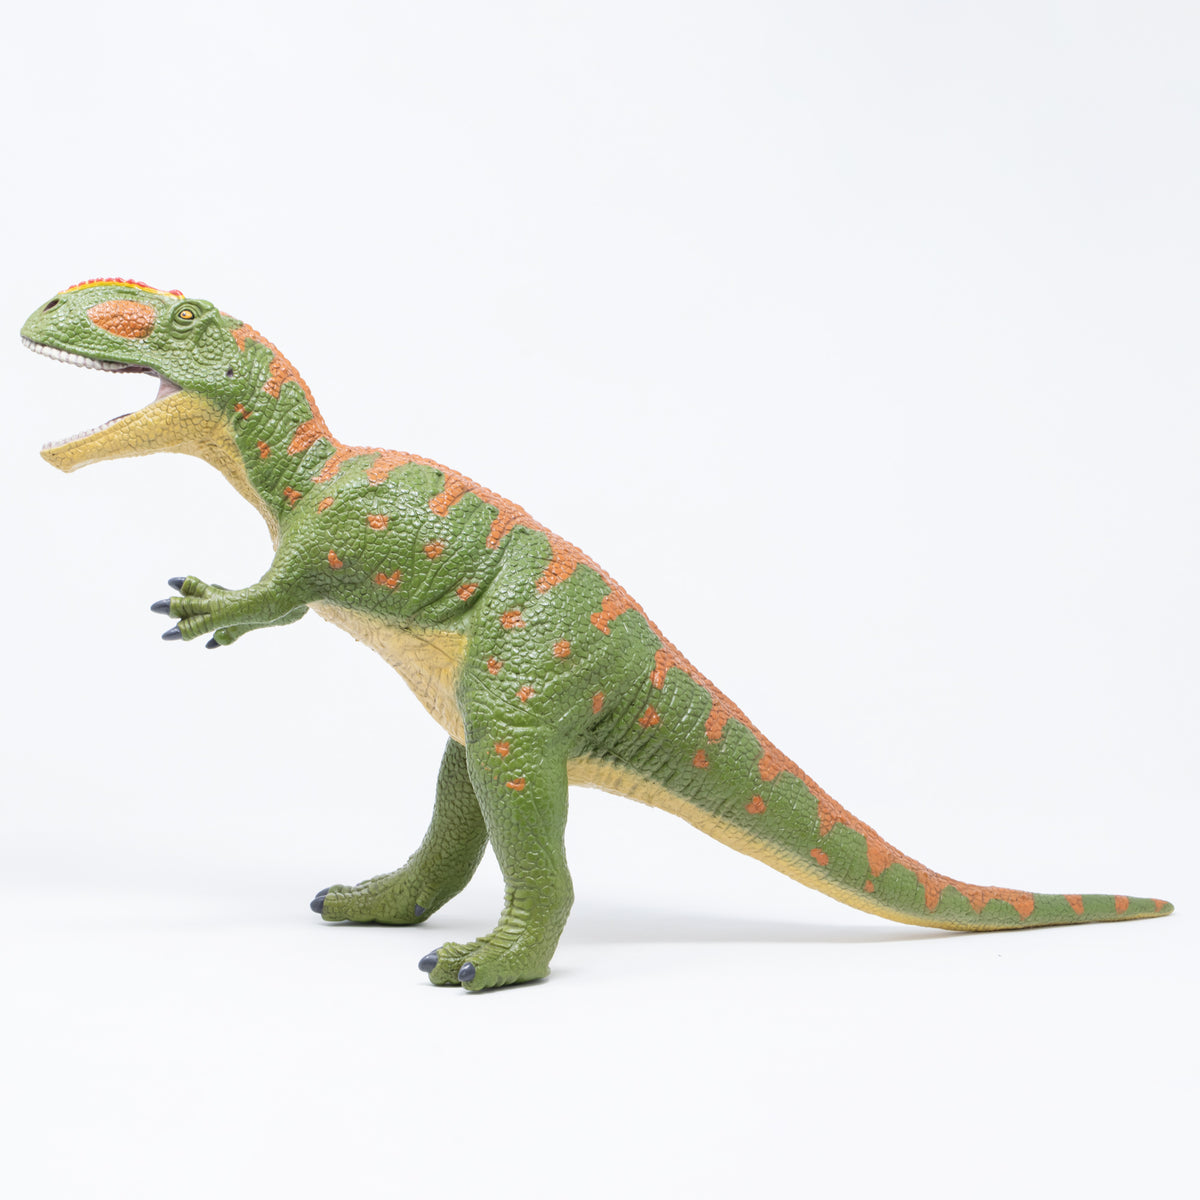 Favorite｜ギガノトサウルス ビニールモデル｜愛嬌とリアルな雰囲気が 